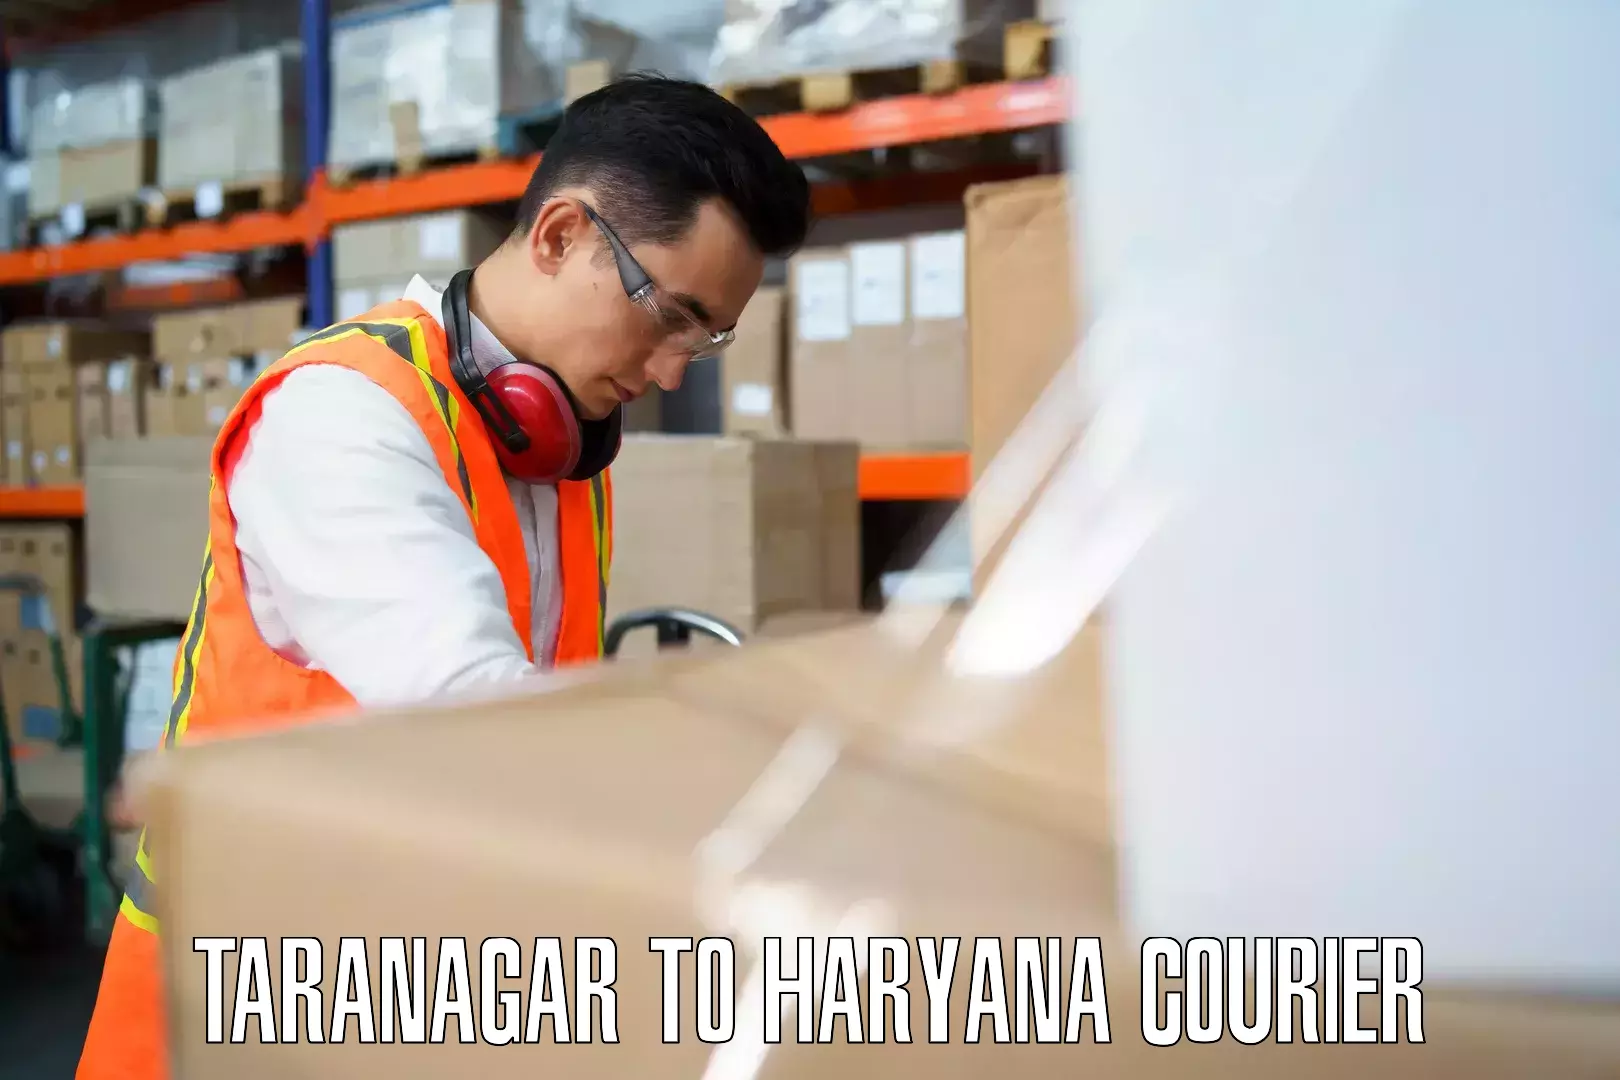 Baggage courier optimization Taranagar to Gohana